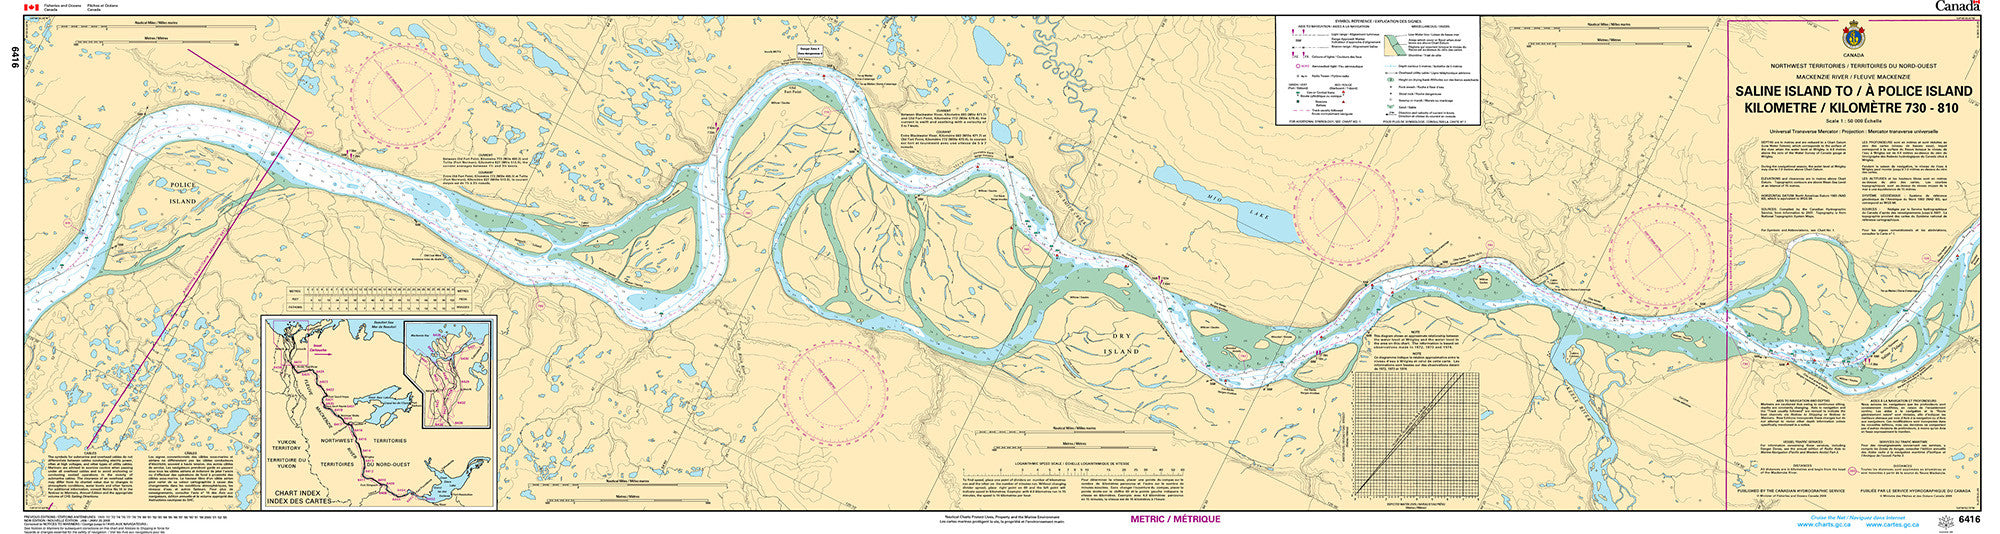 Canadian Hydrographic Service Nautical Chart CHS6416: Saline Island to/à Police Island Kilometre 730 / Kilometre 810